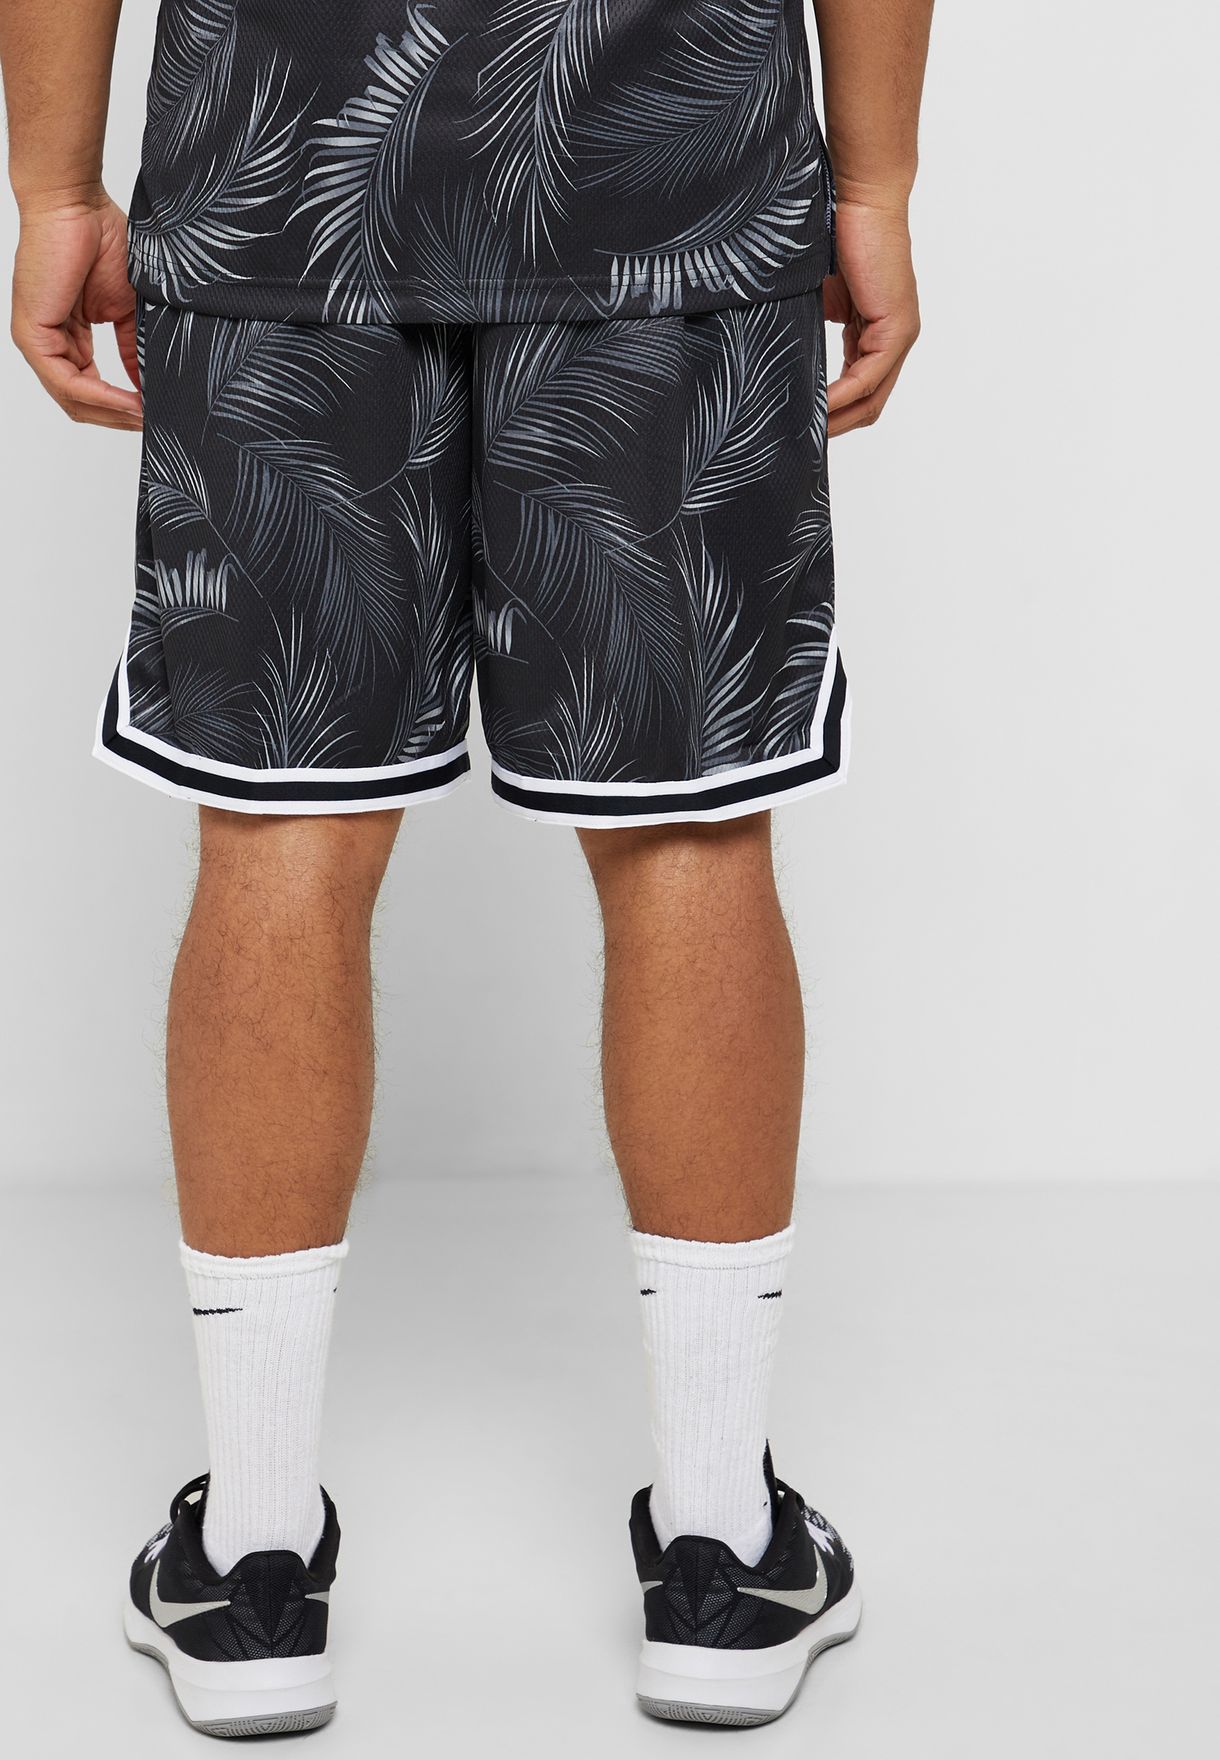 floral basketball shorts